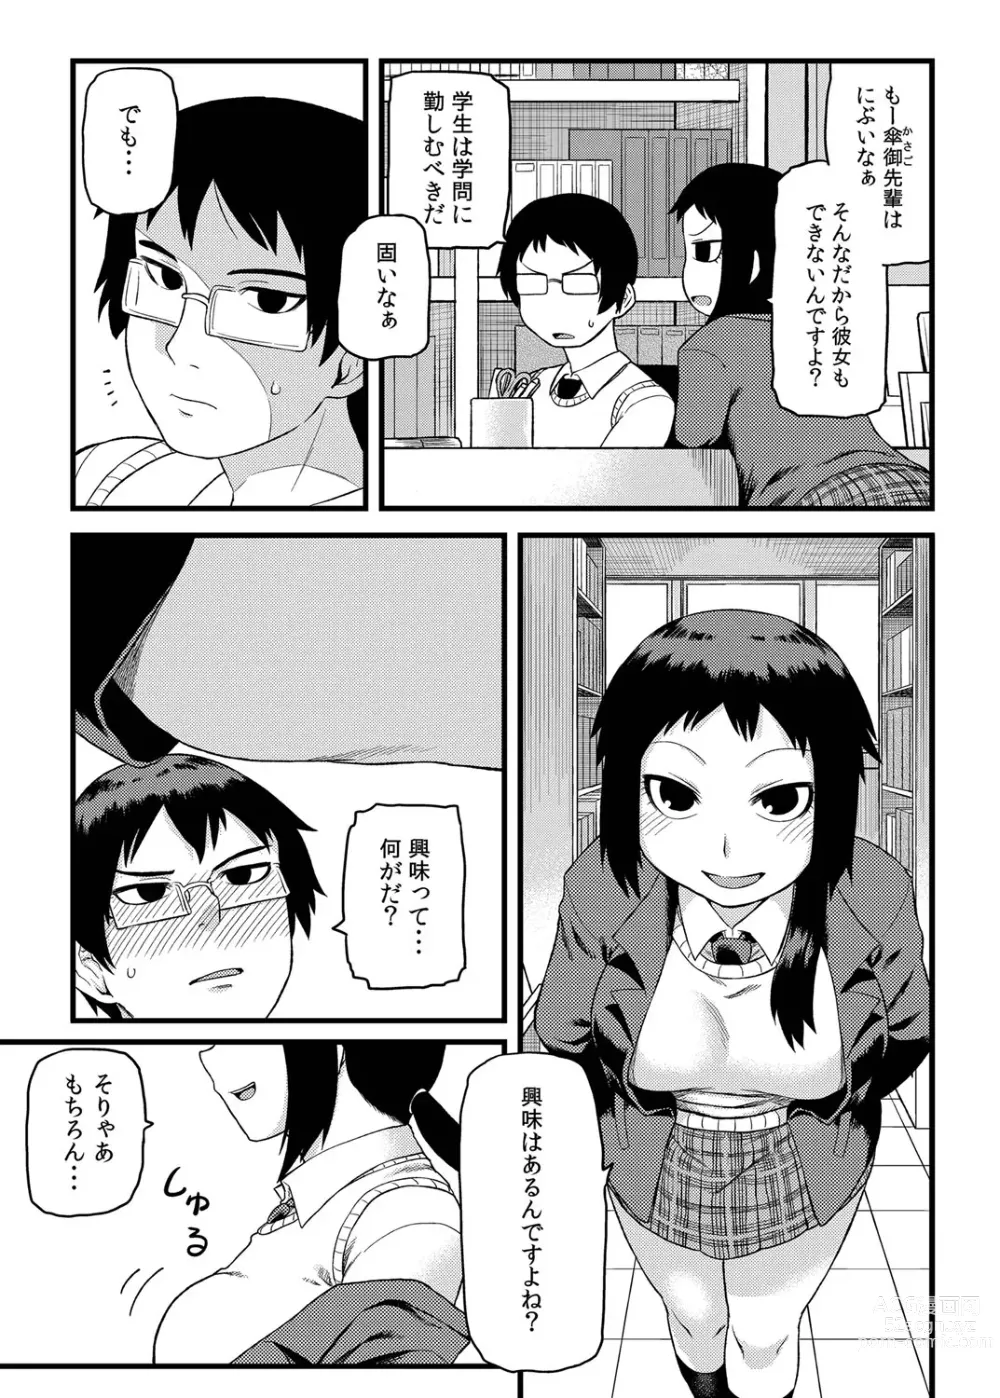 Page 4 of manga Toshoshitsu no Senpai to.